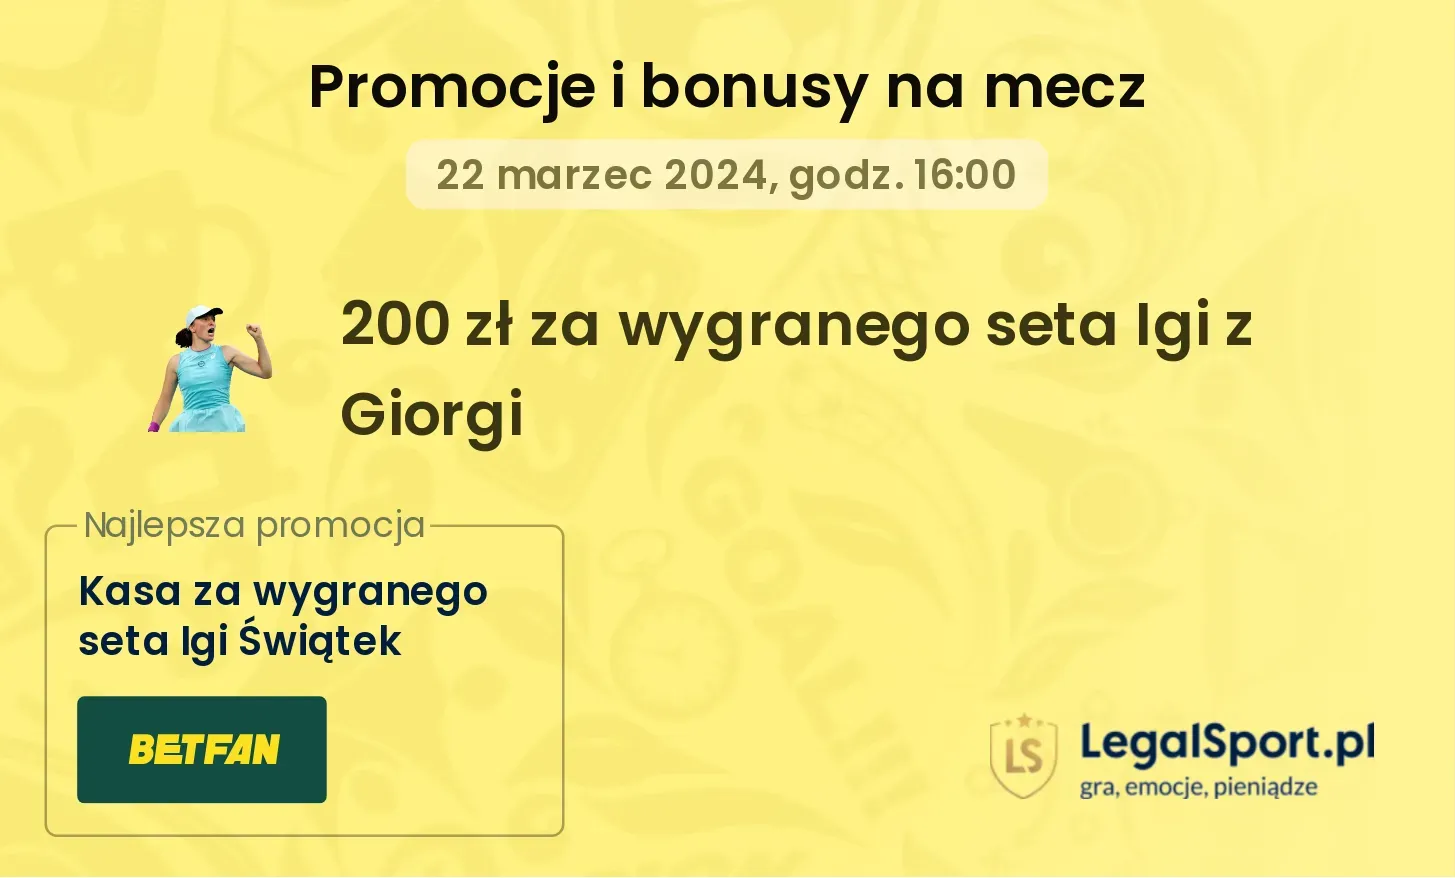 200 zł za wygranego seta Igi z Giorgi promocje bonusy na mecz